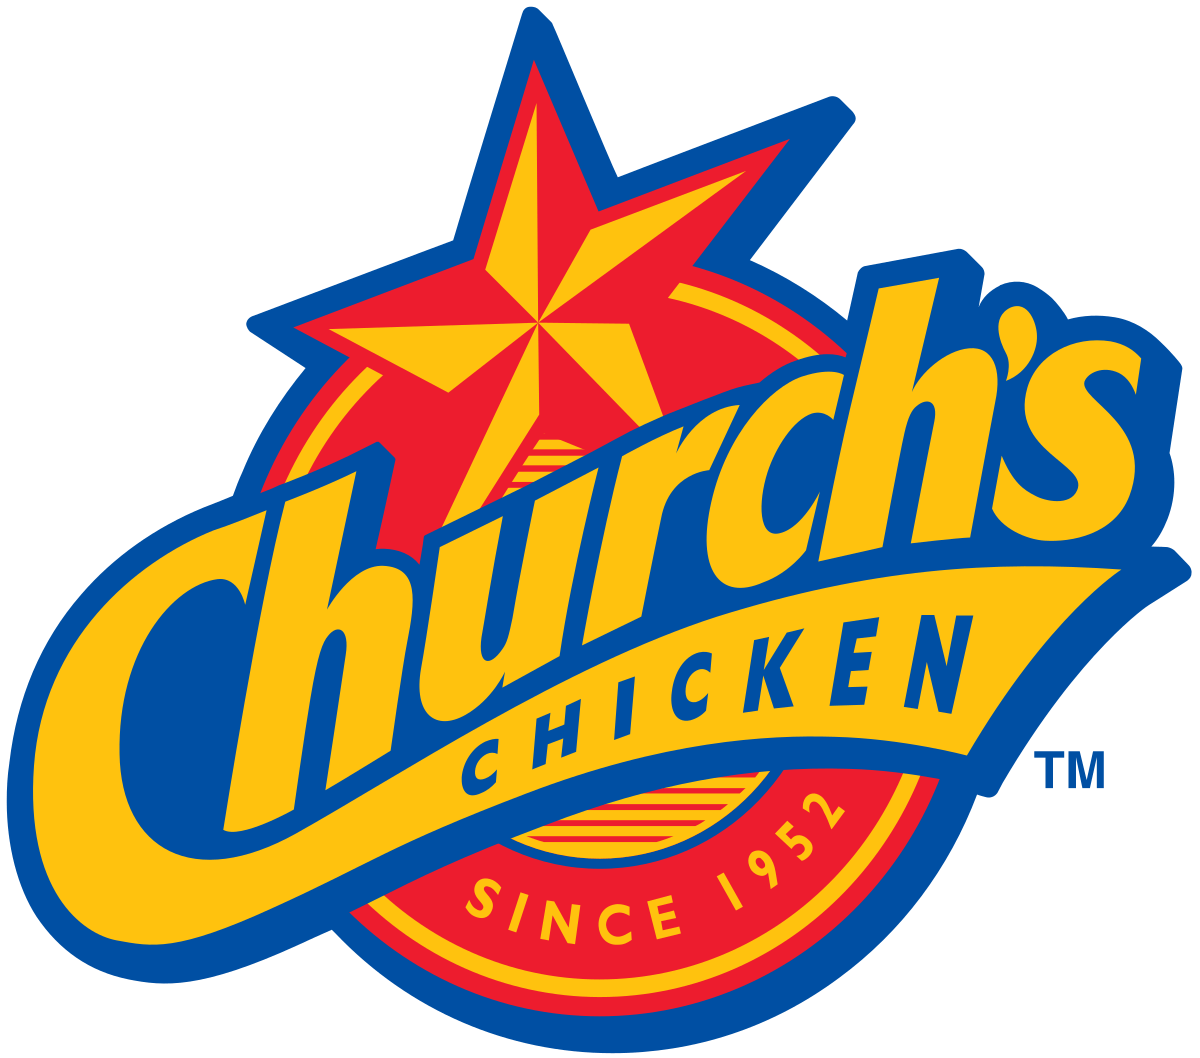 Popeys Logo - Church's Chicken